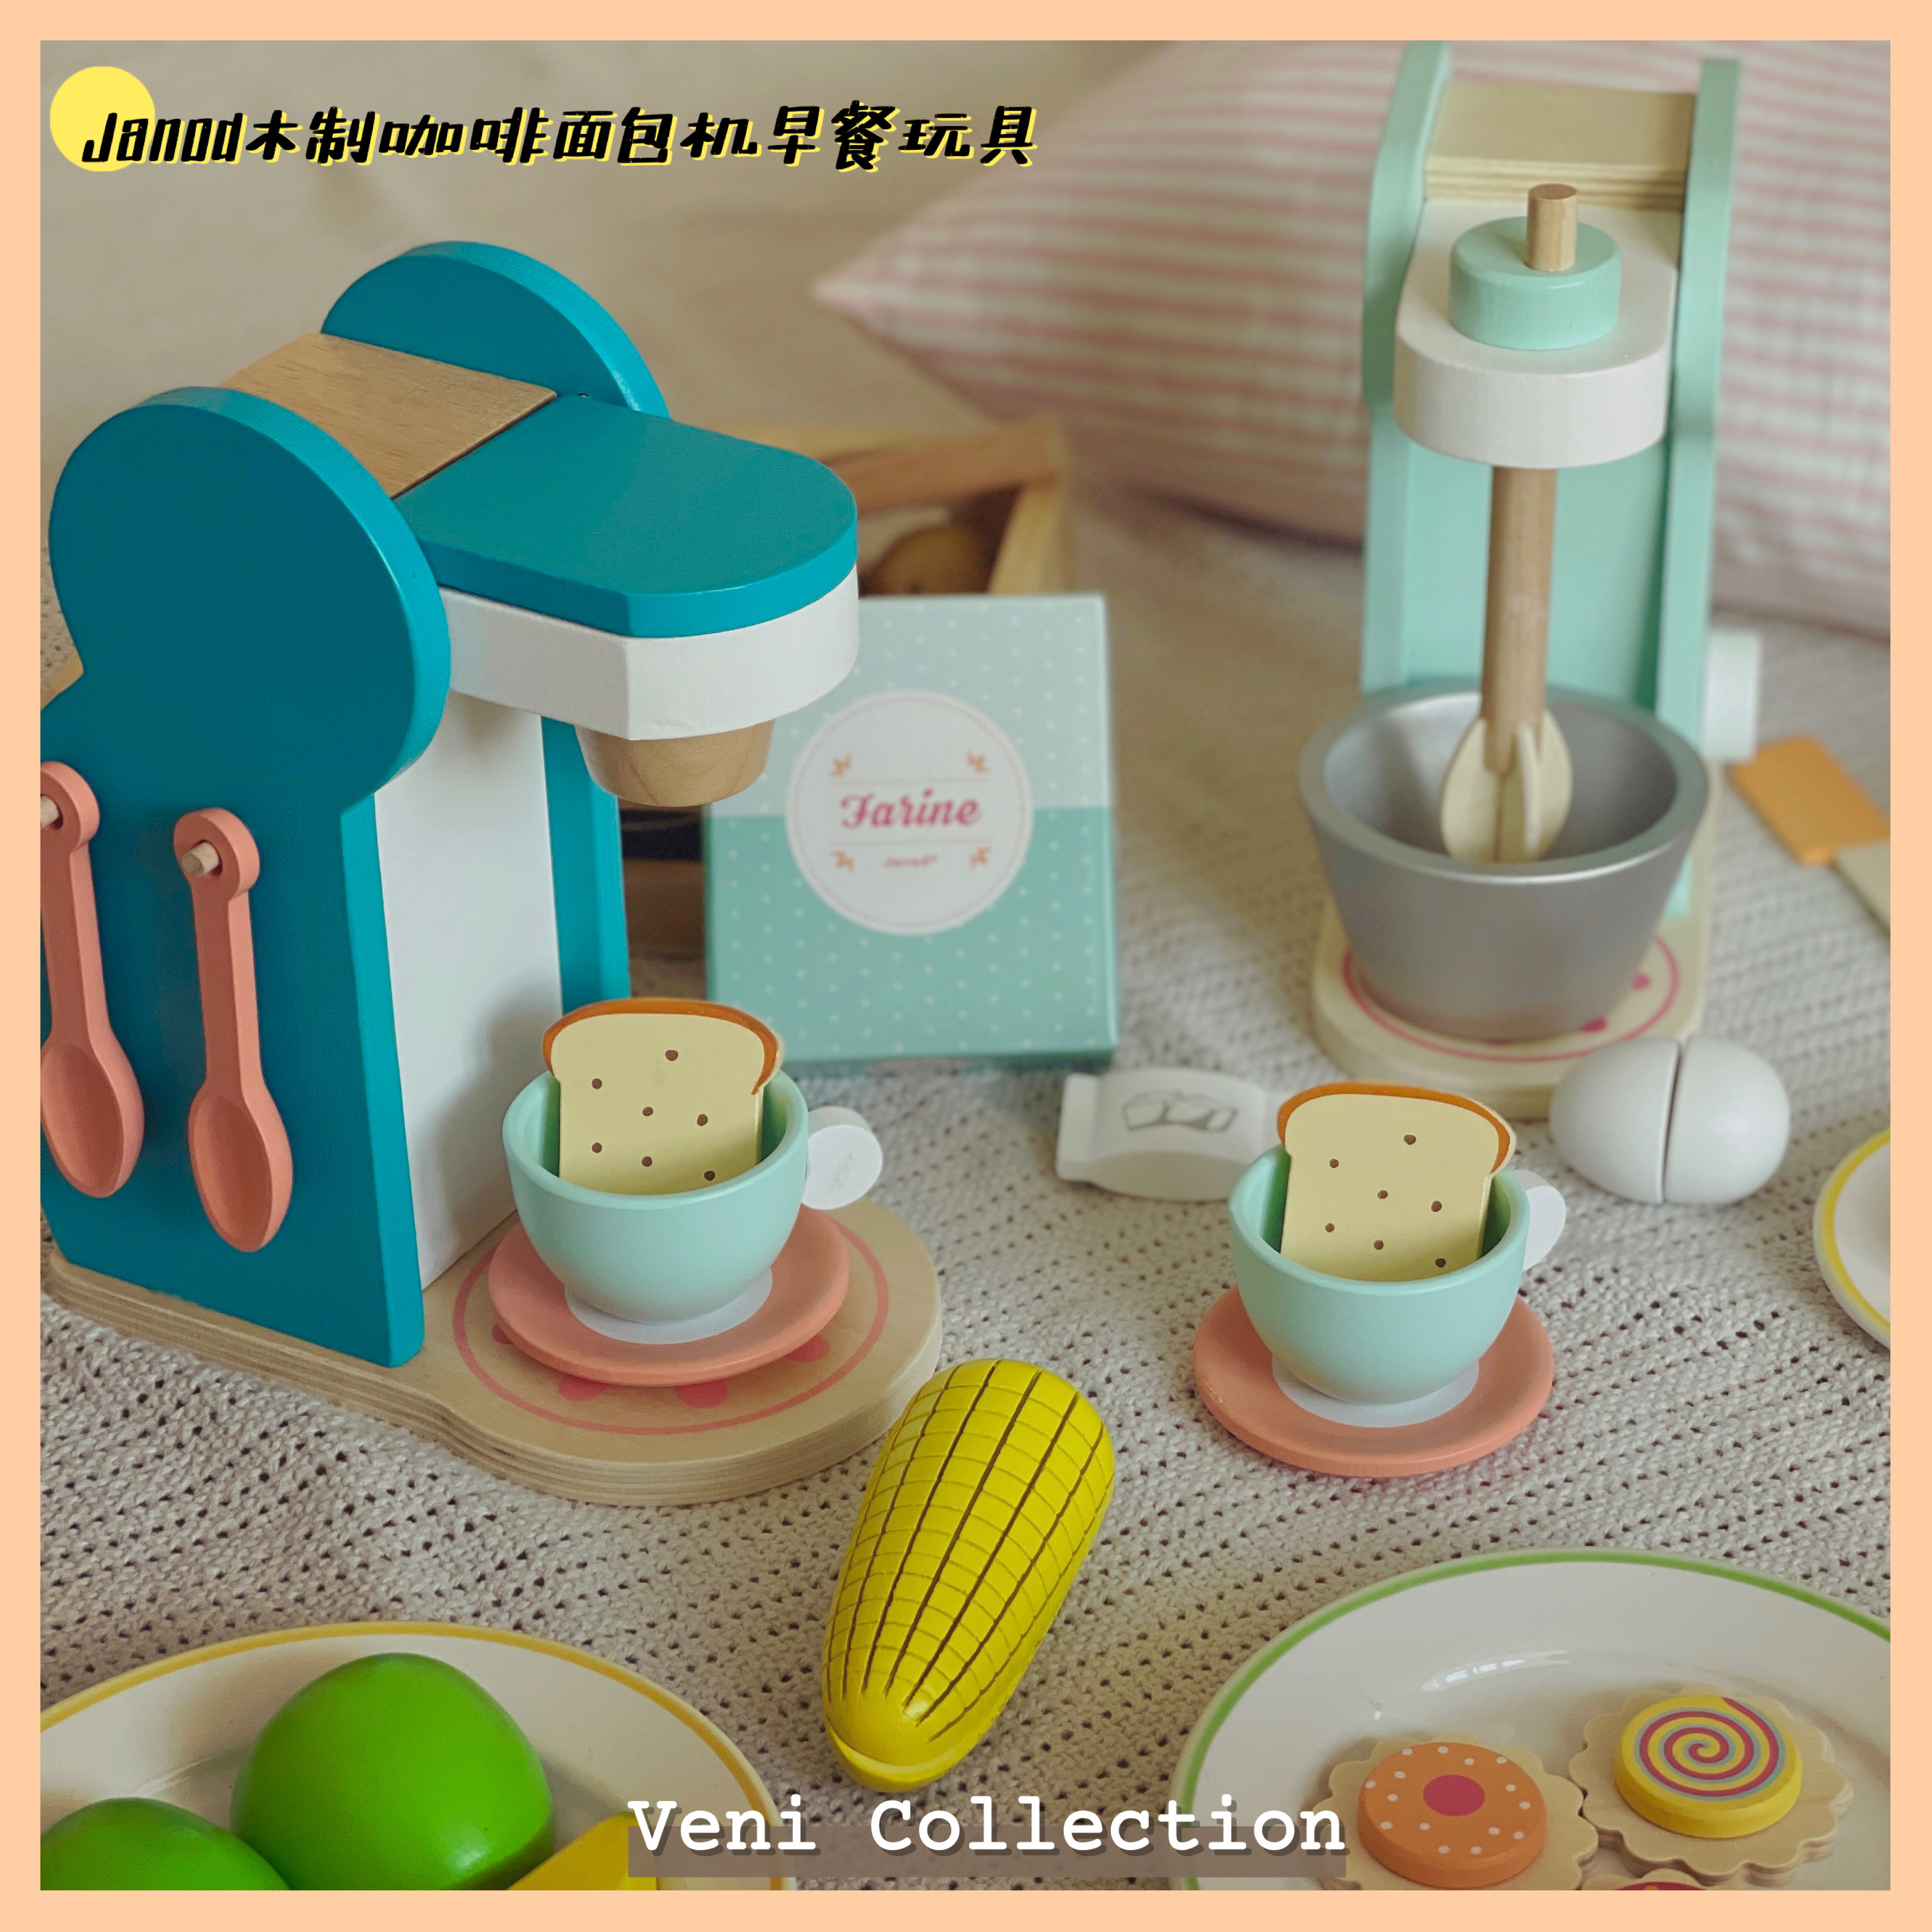 清仓价 法国Janod宝宝早餐木制咖啡机玩具儿童早教益智仿真厨房